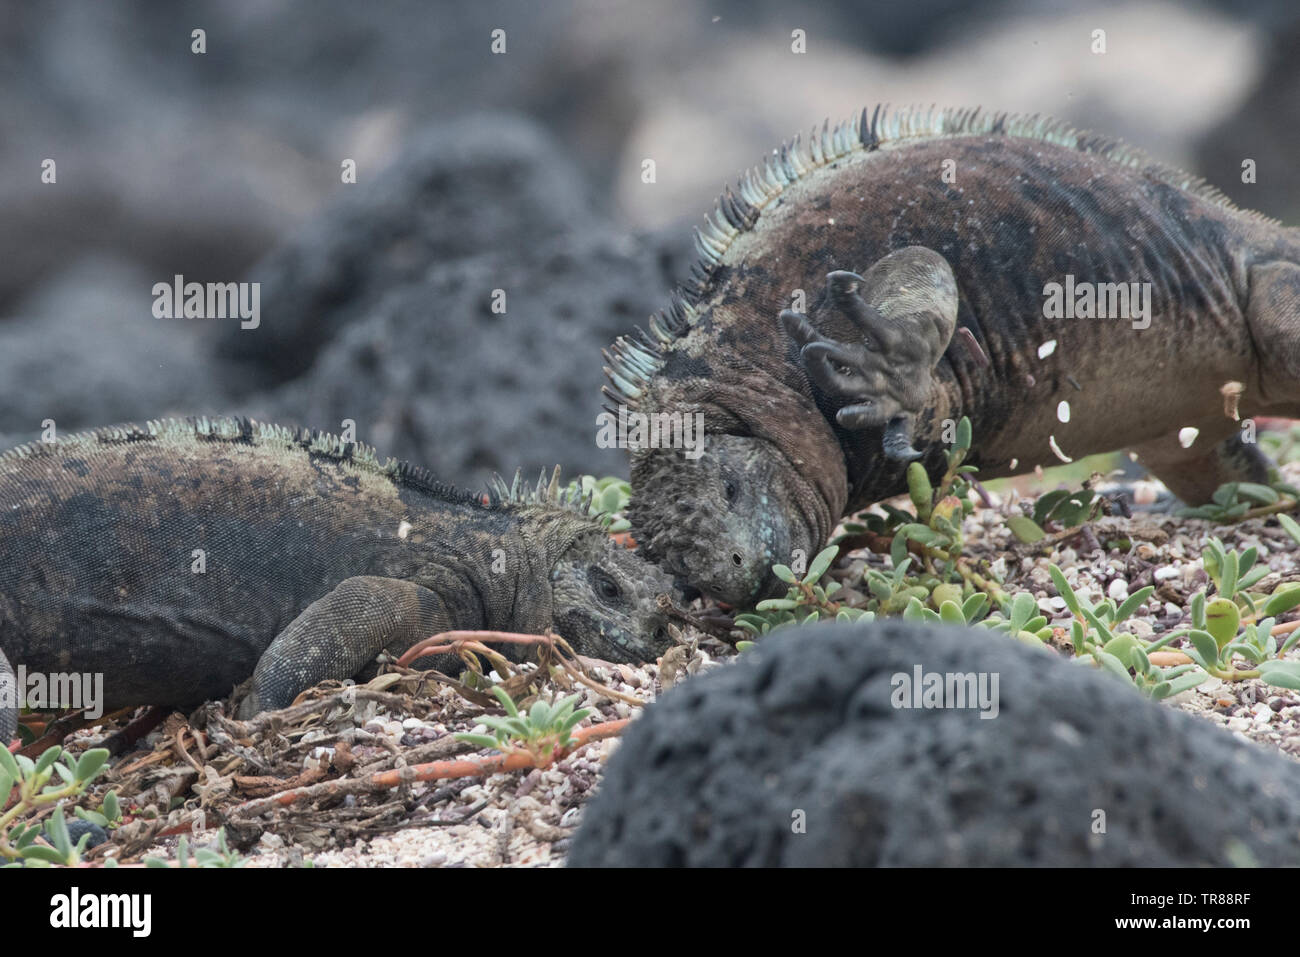 Iguanes marins (Amblyrhynchus cristatus) dénigrement de leurs têtes ensemble dans un combat territorial sur une étendue de plage dans les îles Galapagos, en Équateur. Banque D'Images